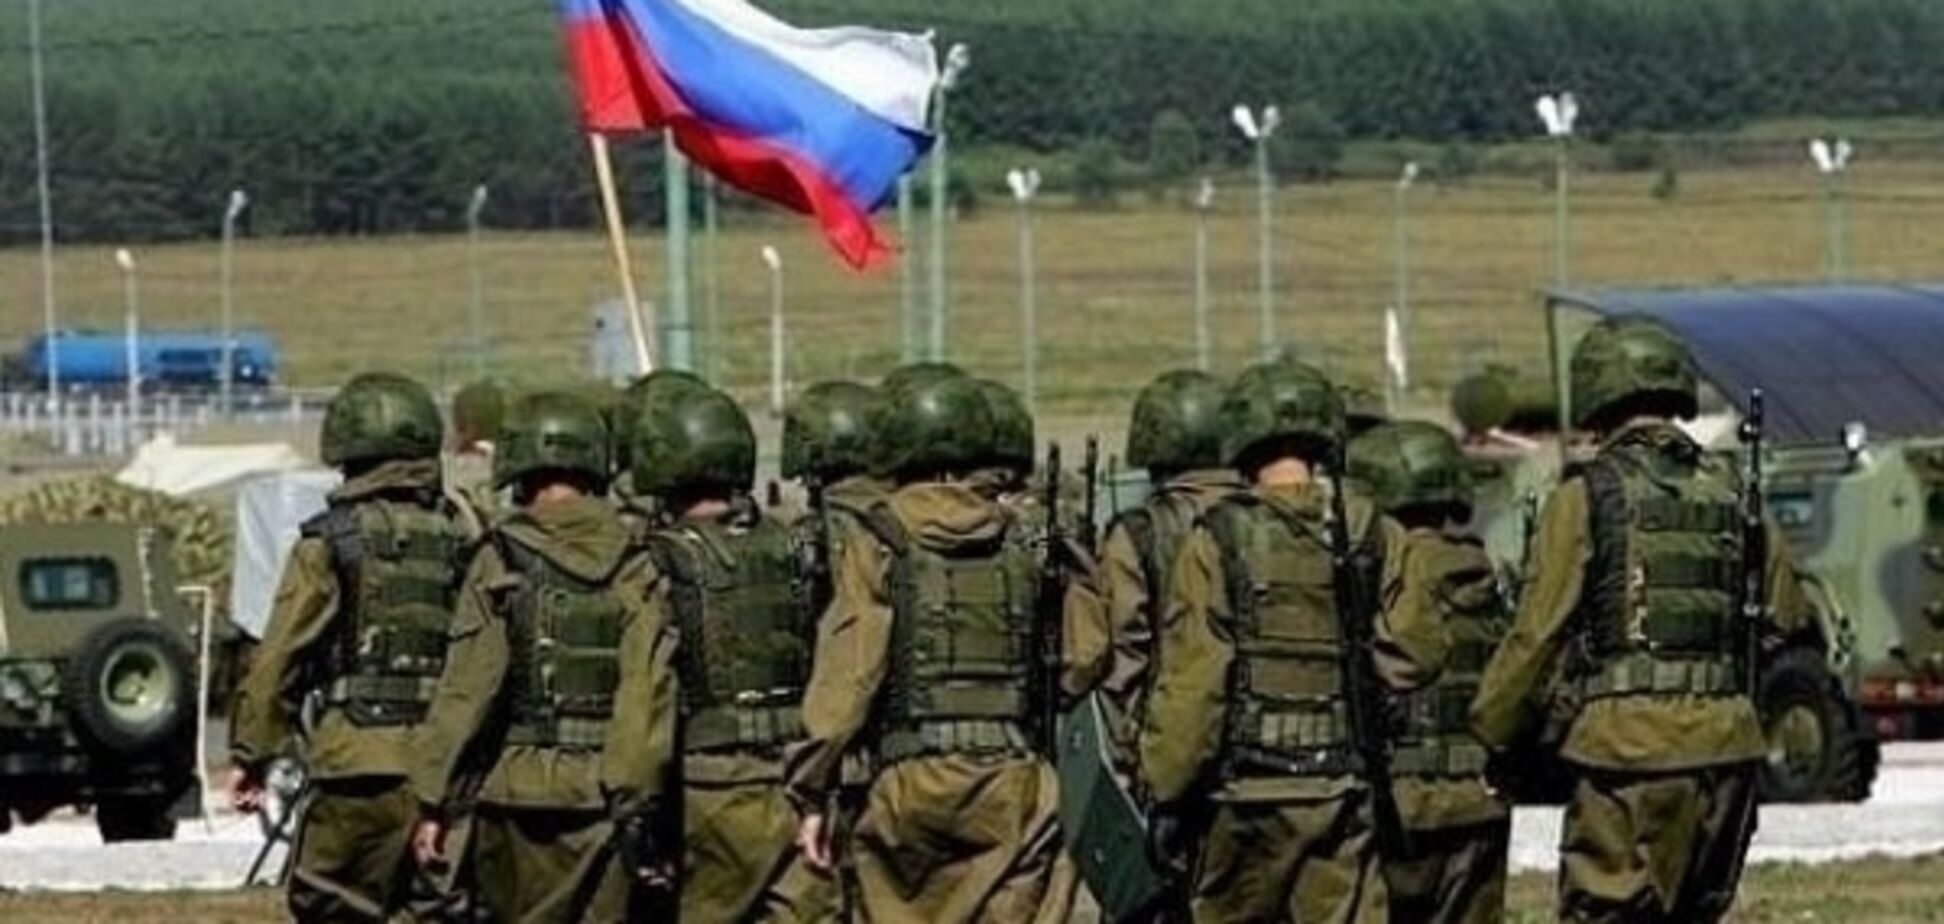 Появились 'зеленые человечки': Россия пошла на провокацию против соседа Украины